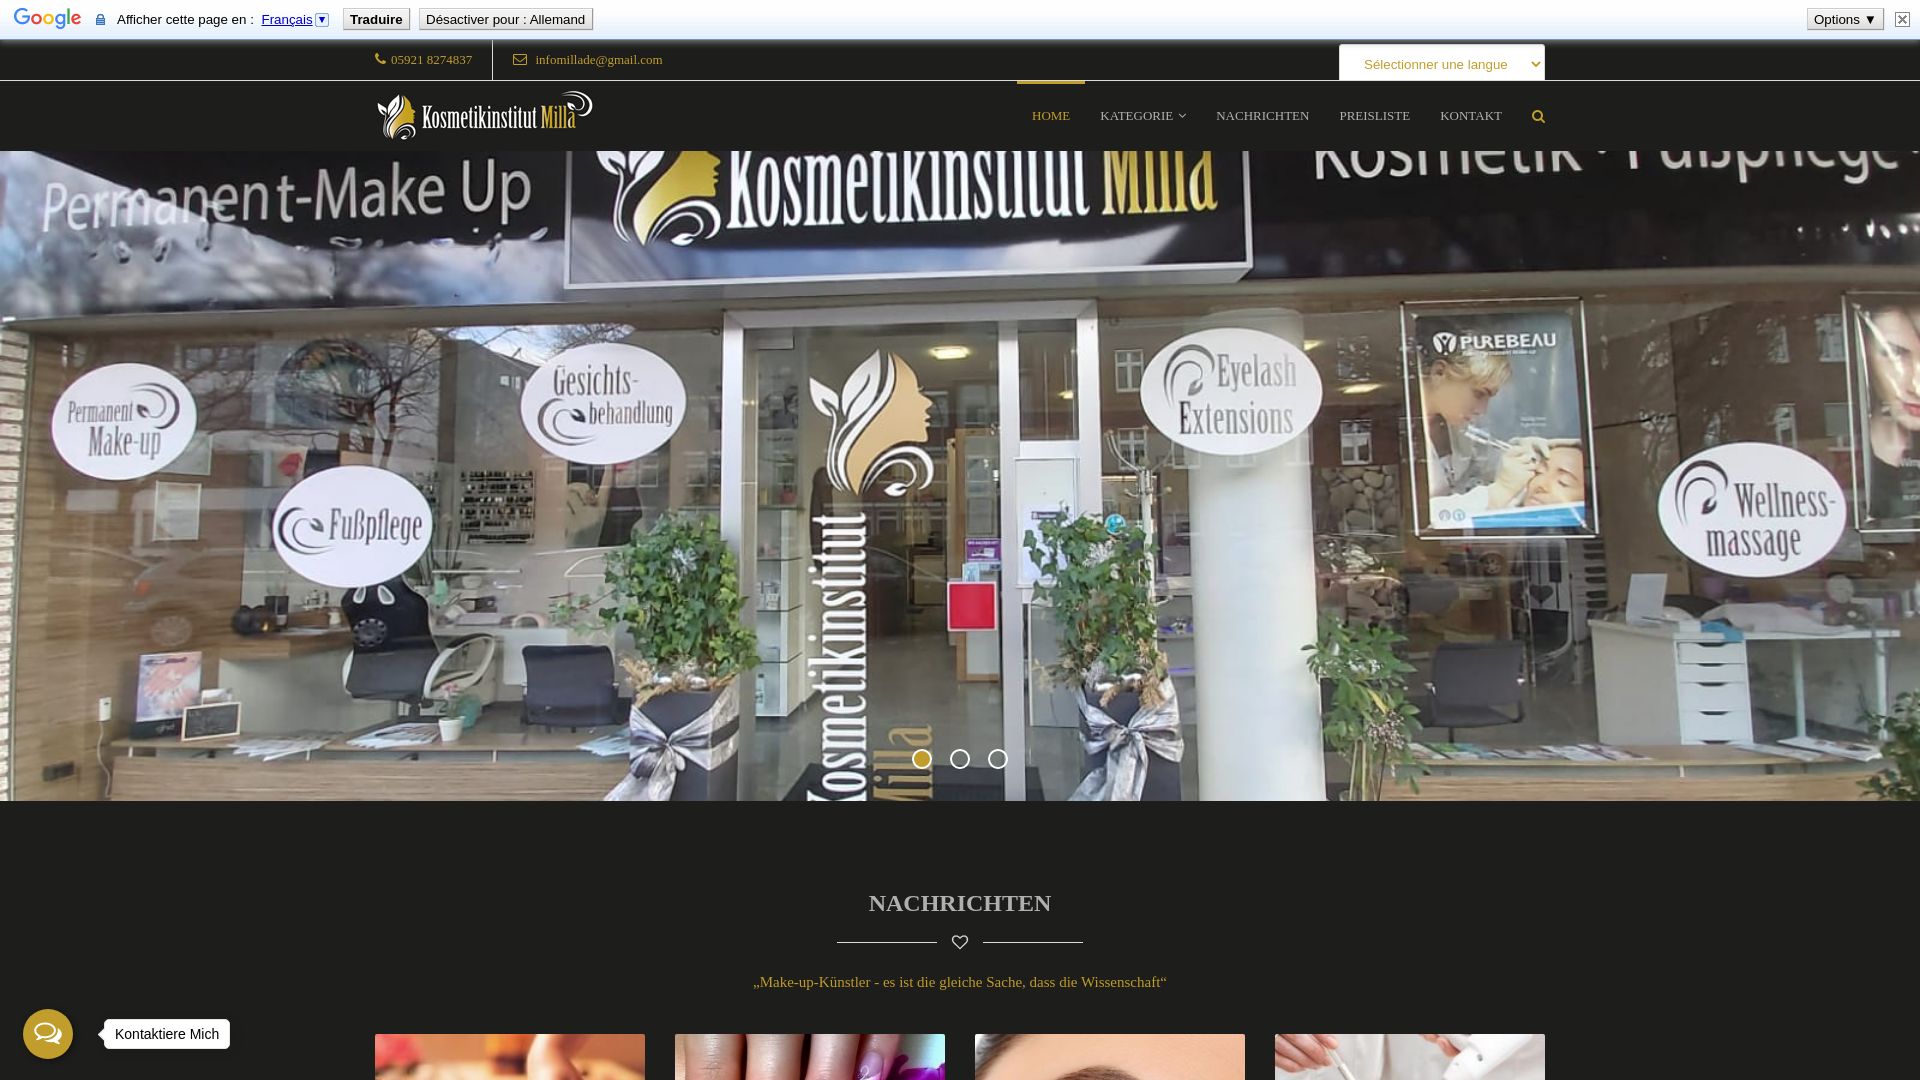 Website status kosmetikinstitut-milla.de is   ONLINE